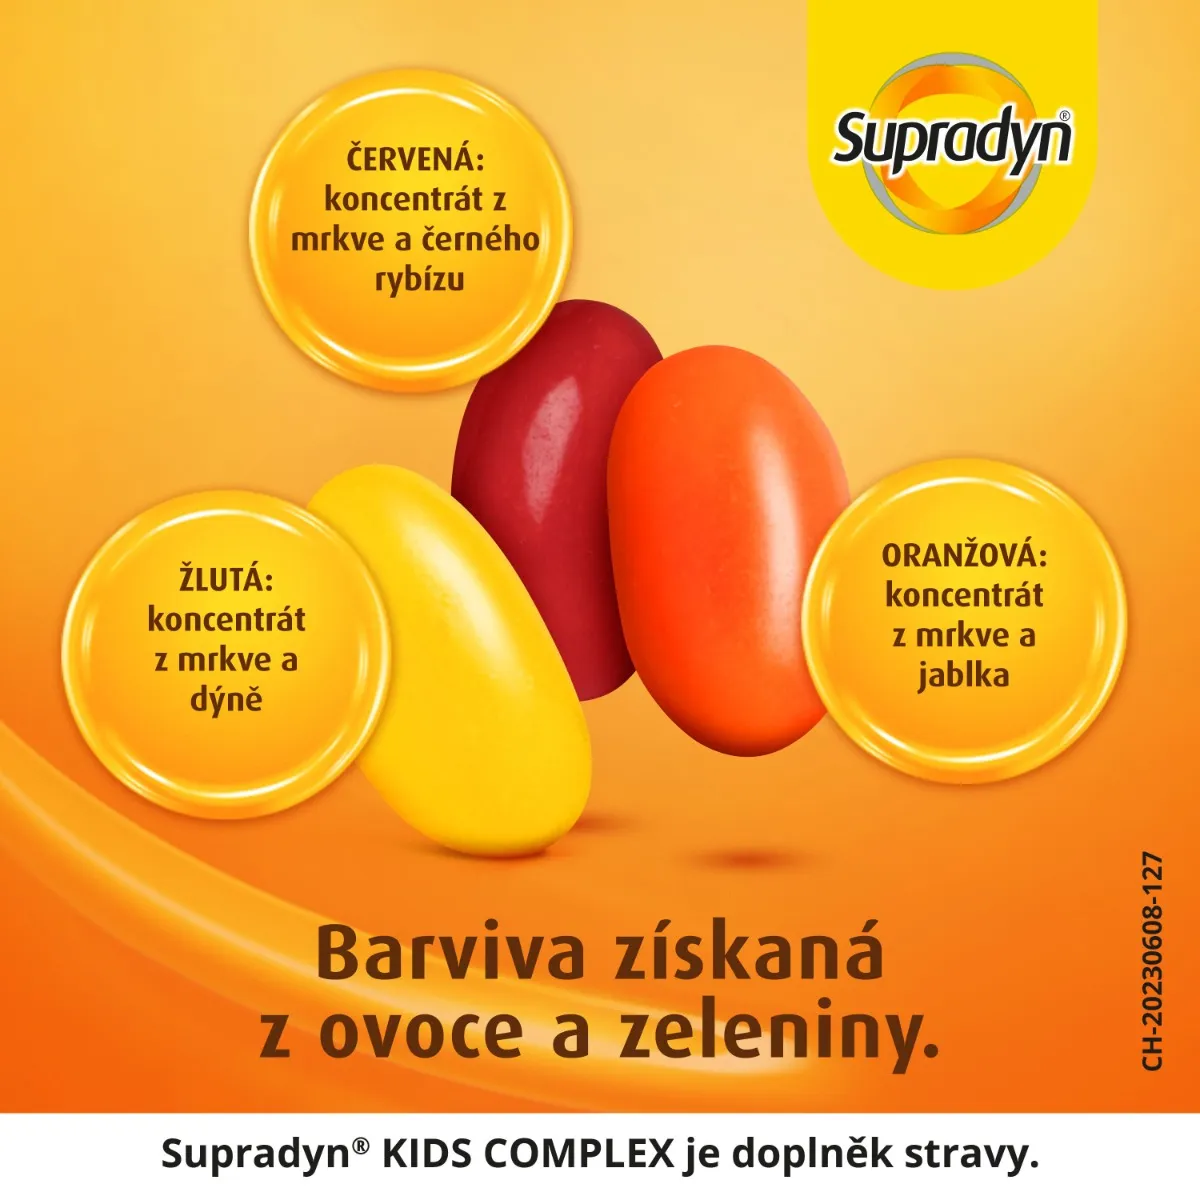 Supradyn Kids Complex želé fazolky 60 ks